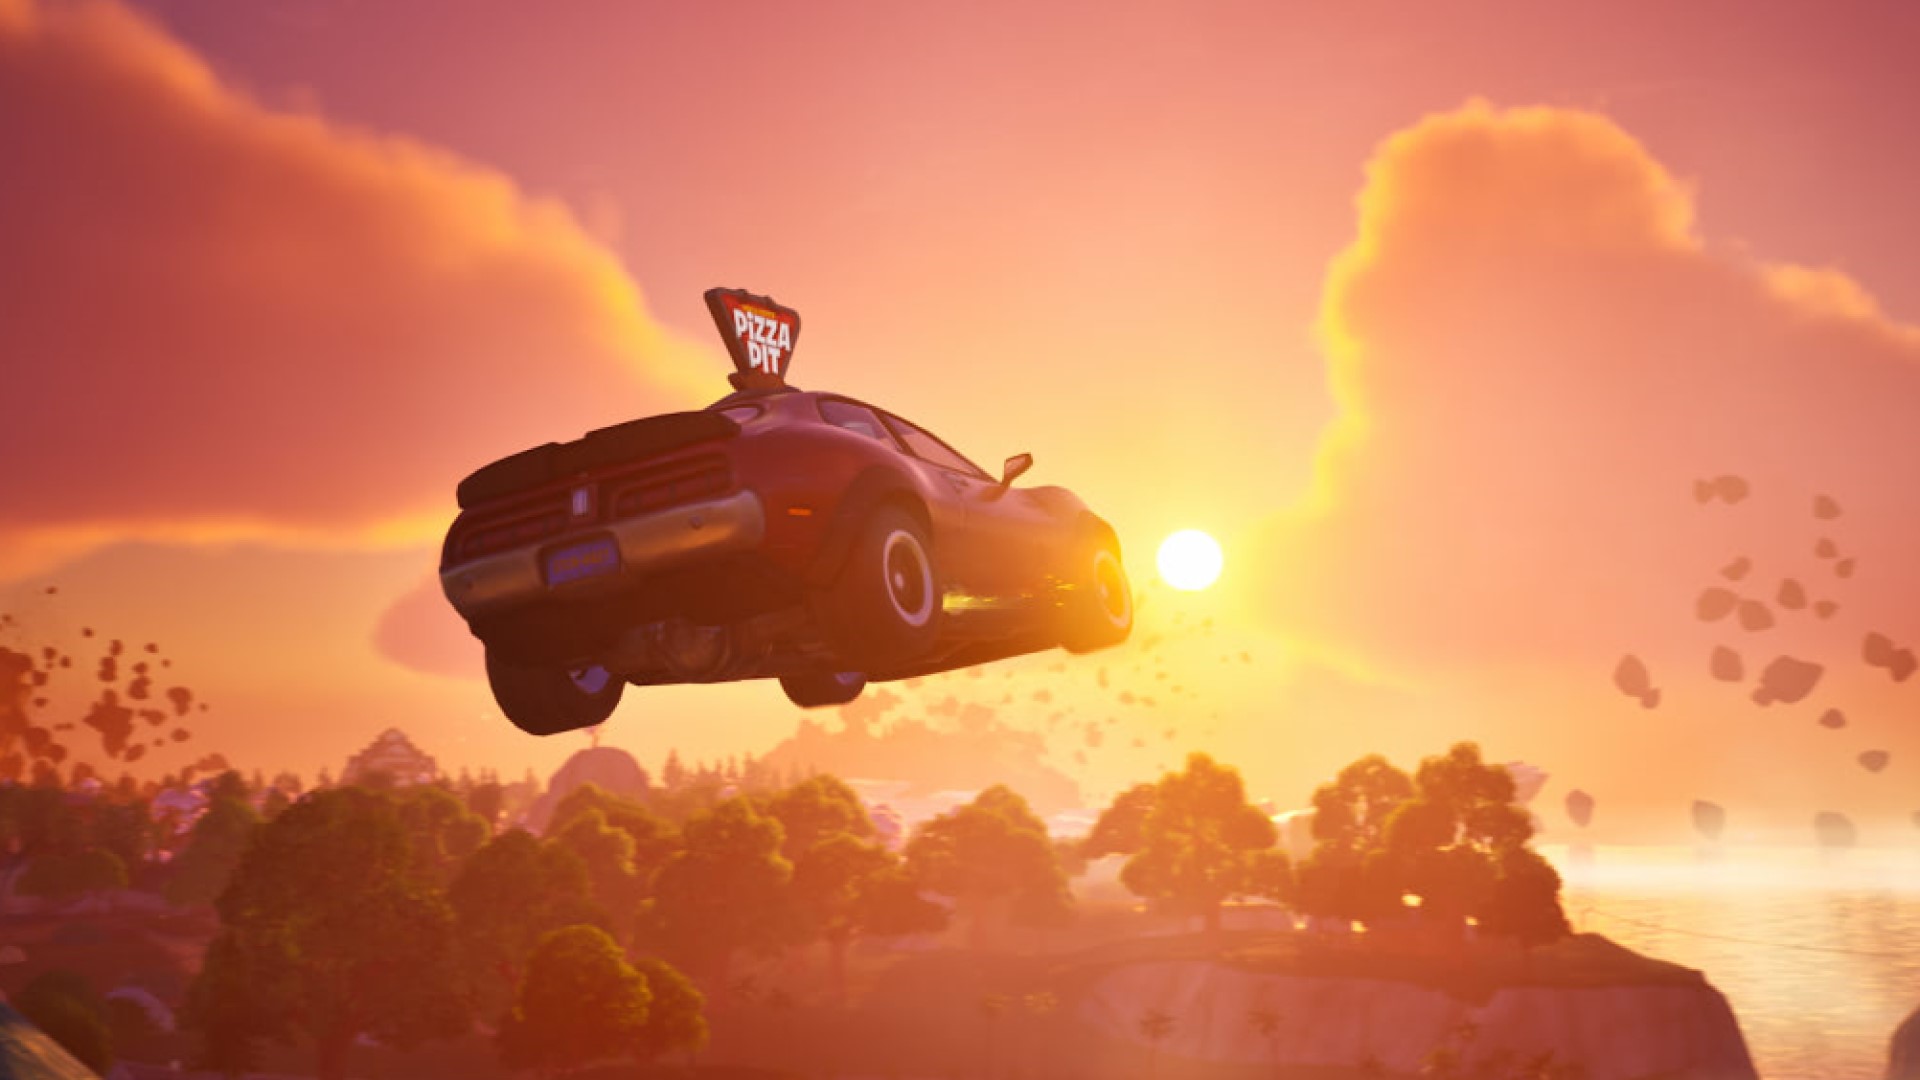 Une voiture à pizza saute à travers un ravin lors d'un lever de soleil pittoresque.